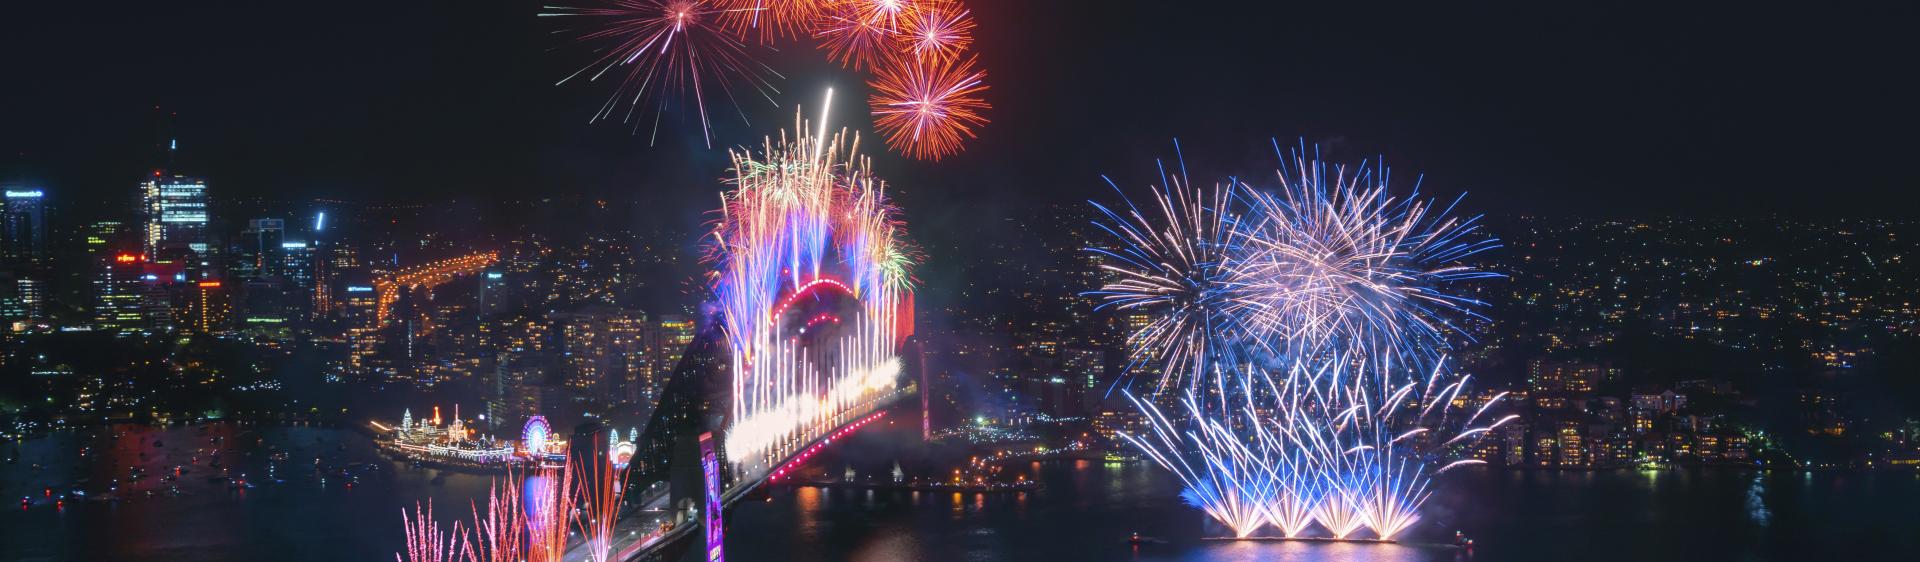 壯觀的午夜煙花匯演遍布雪梨海港在慶祝新的一年的開始2020 ， 雪梨